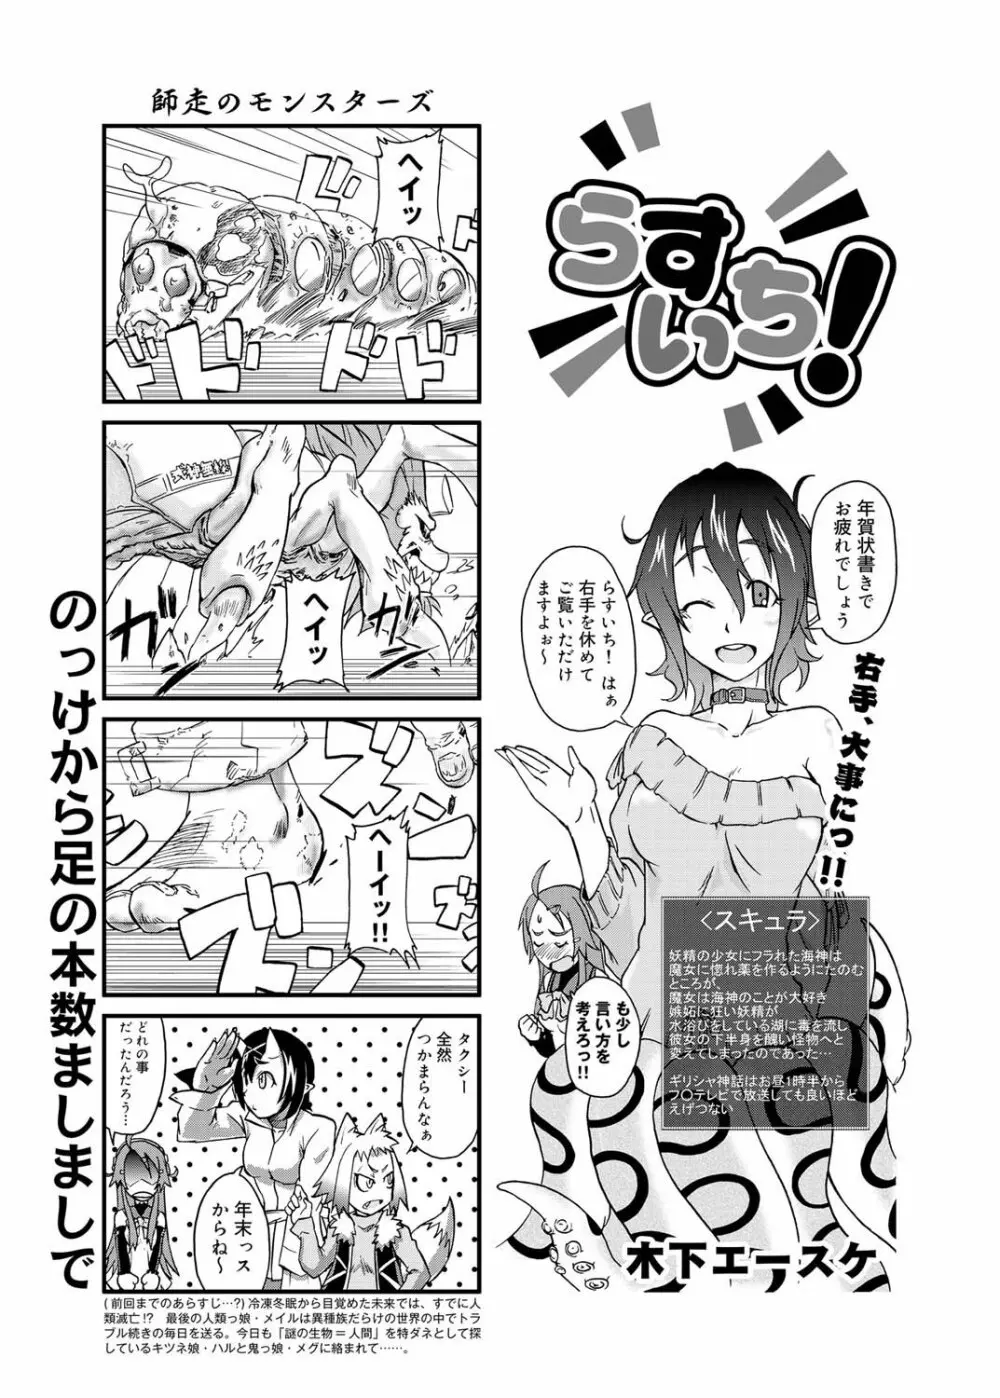 キャノプリ comic 2011年2月号 Vol.4 72ページ